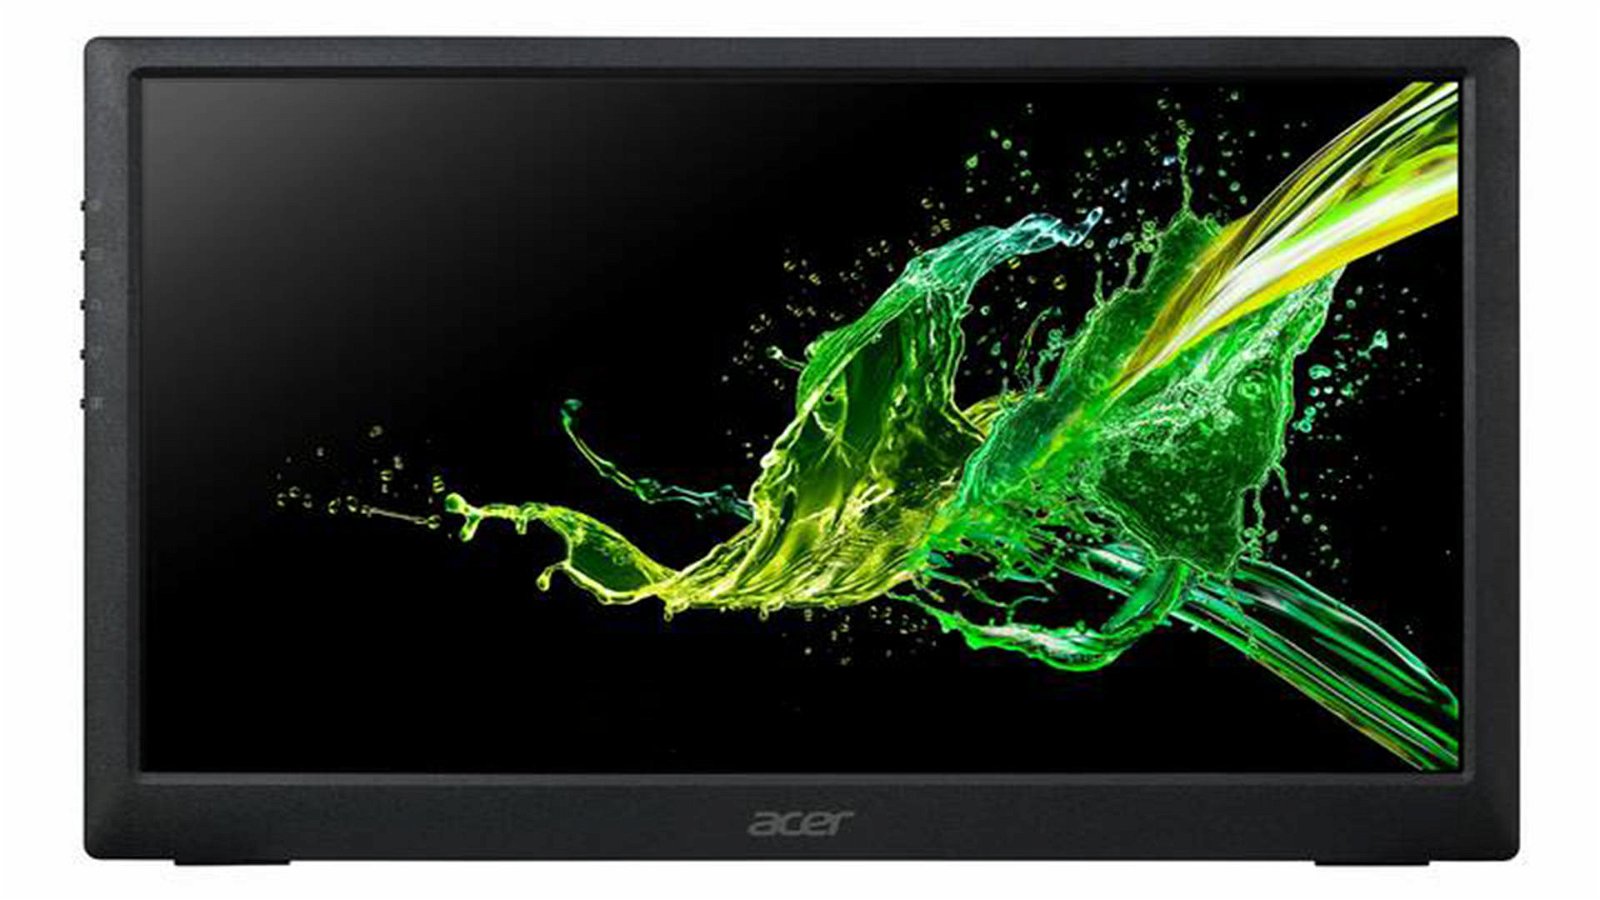 Immagine di Acer PM161Q, un nuovo monitor portatile Full HD da 15,6 pollici